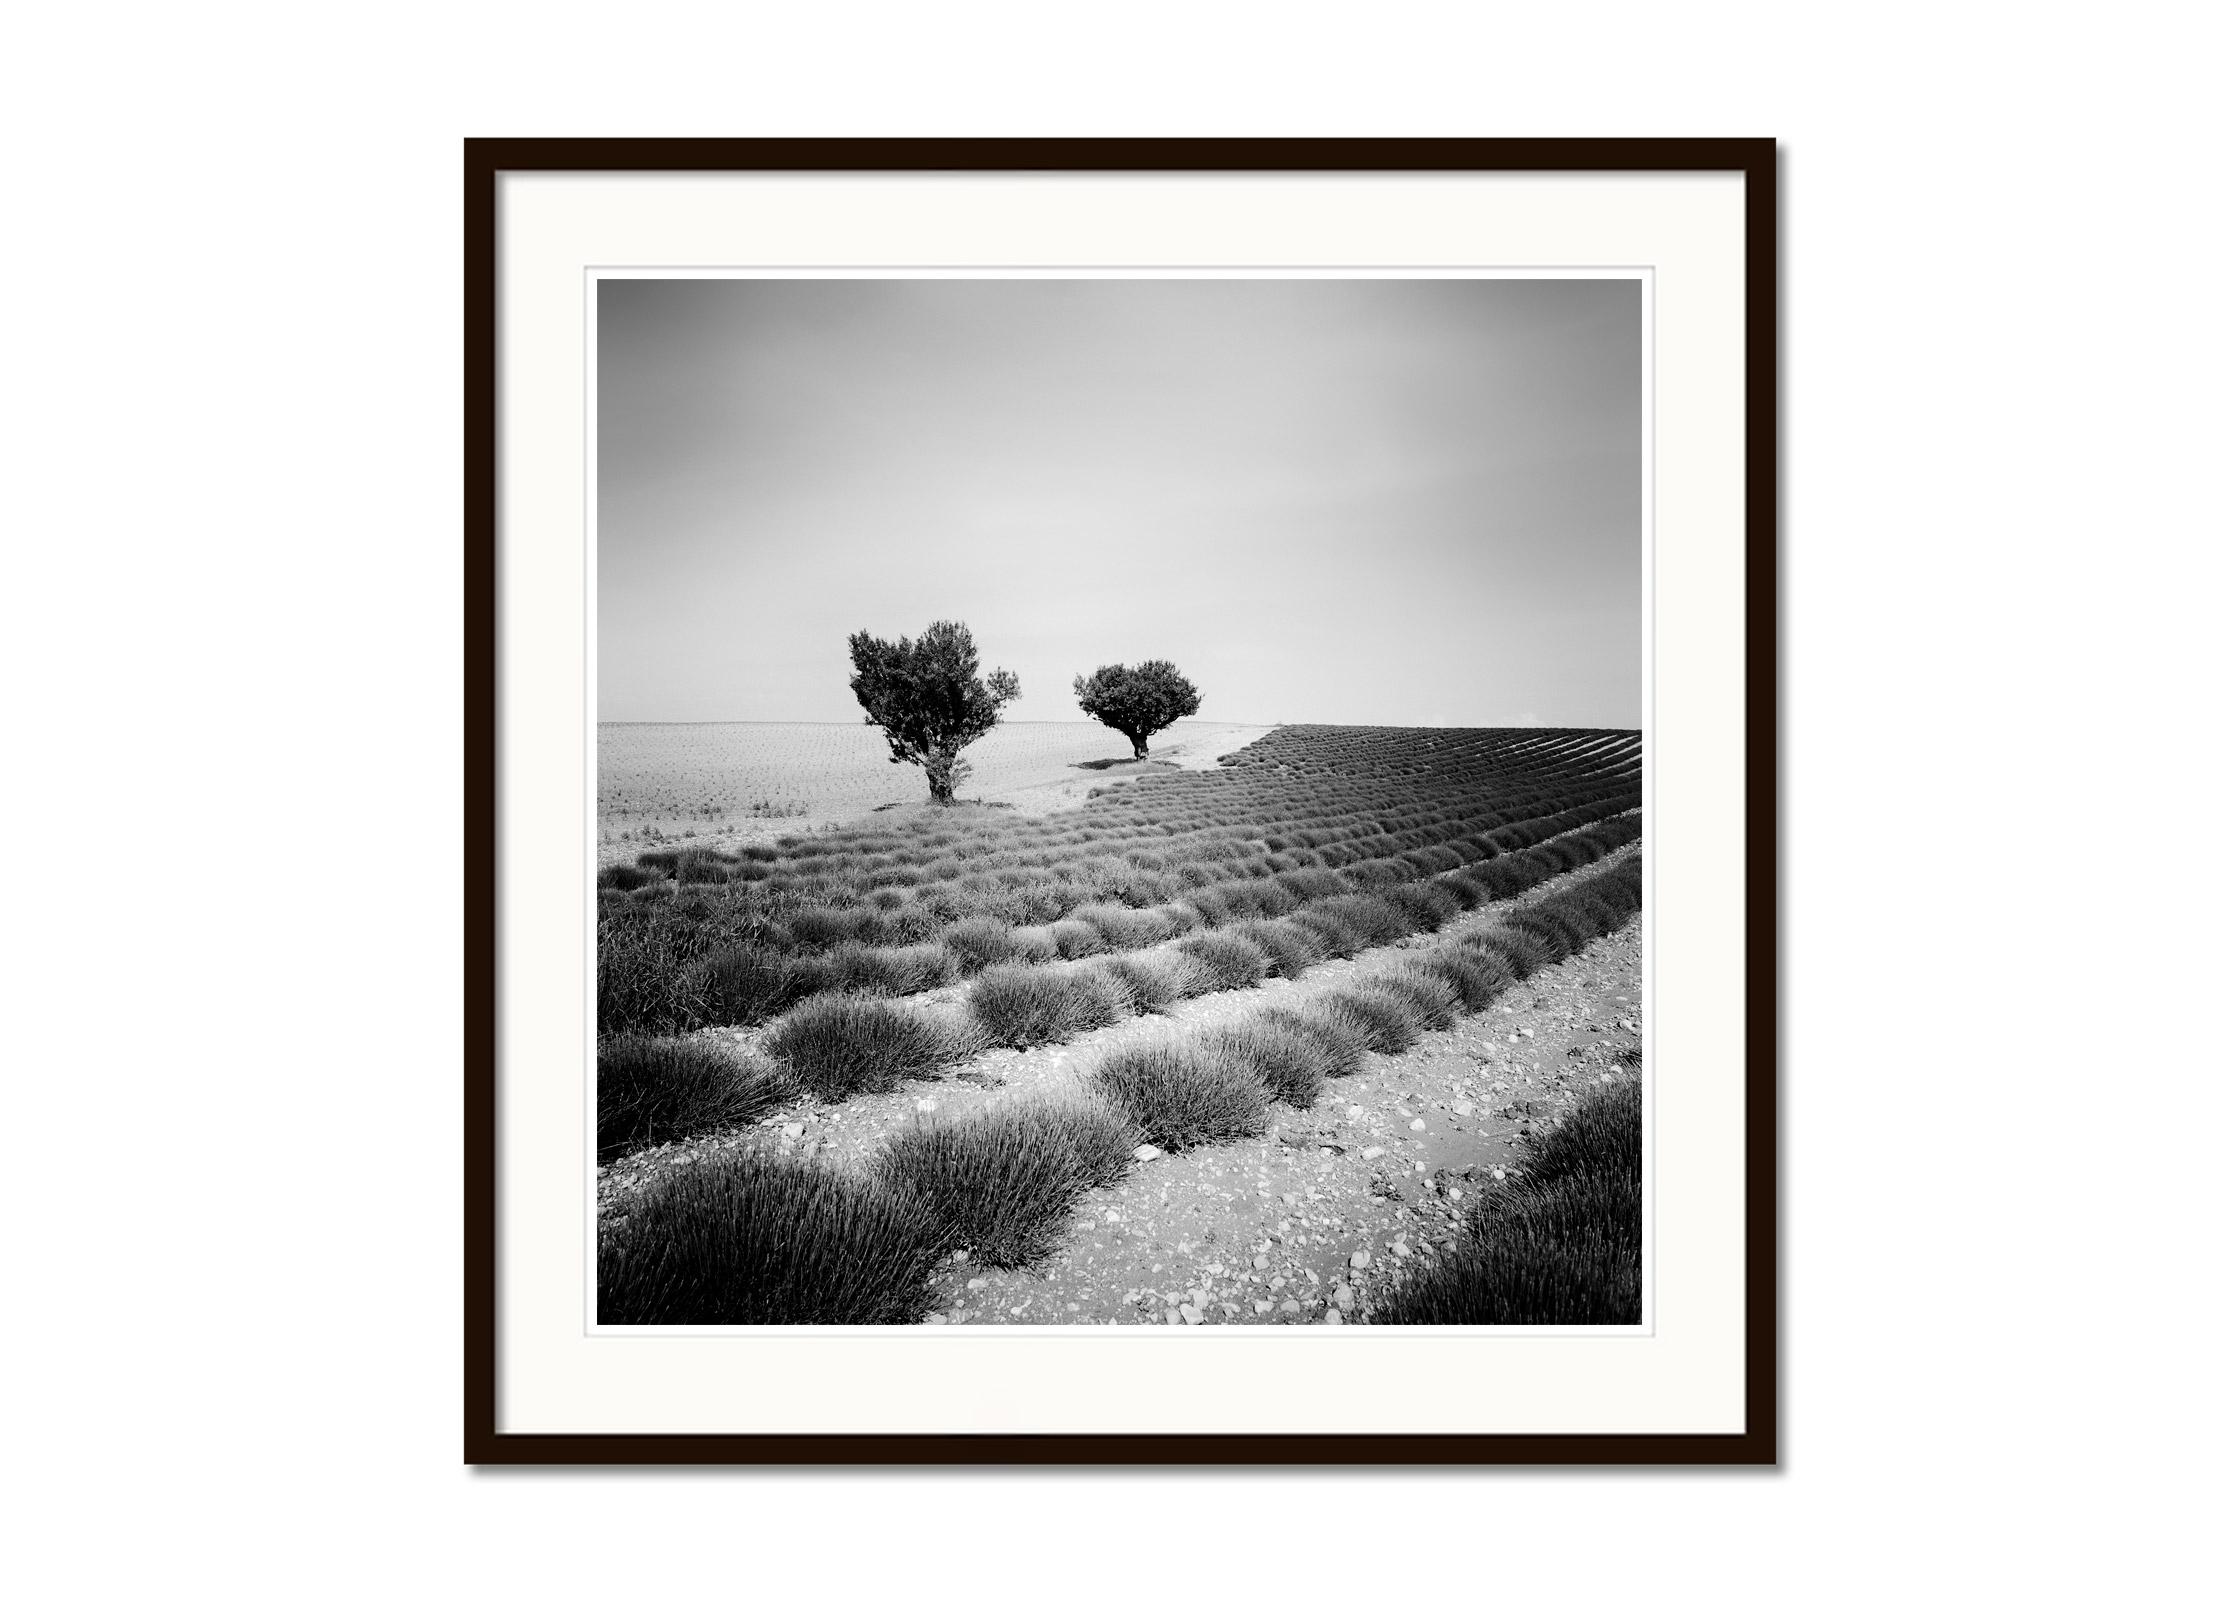 Lavendelfarbenes Feld mit Bäumen, Frankreich, minimalistische schwarz-weiße Kunstlandschaft (Grau), Landscape Photograph, von Gerald Berghammer, Ina Forstinger